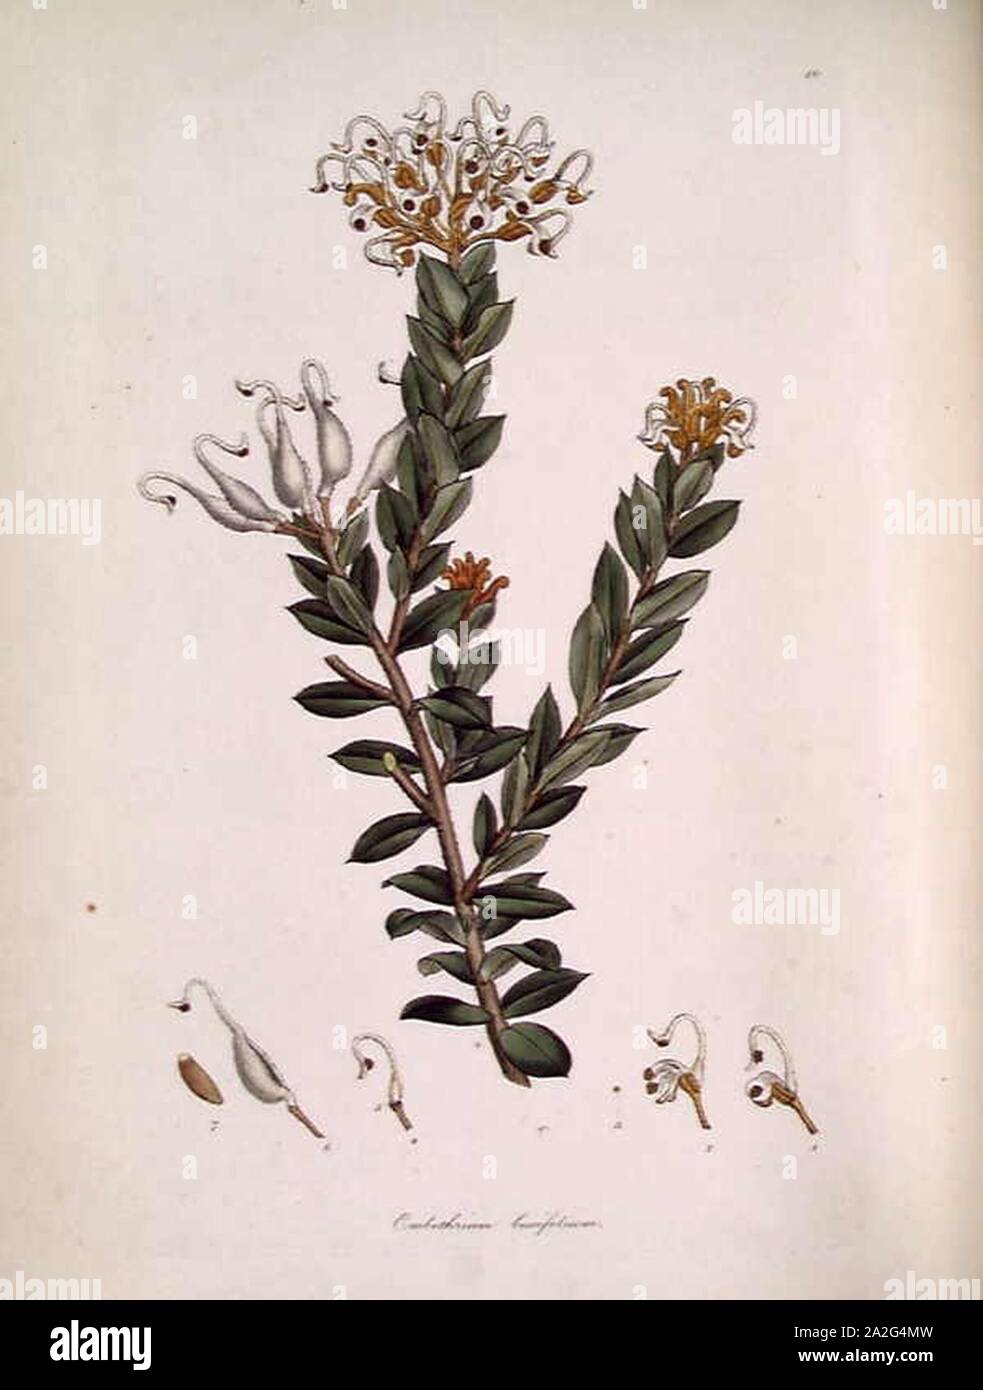 Embothrium (Grevillea) buxifolium. Stock Photo